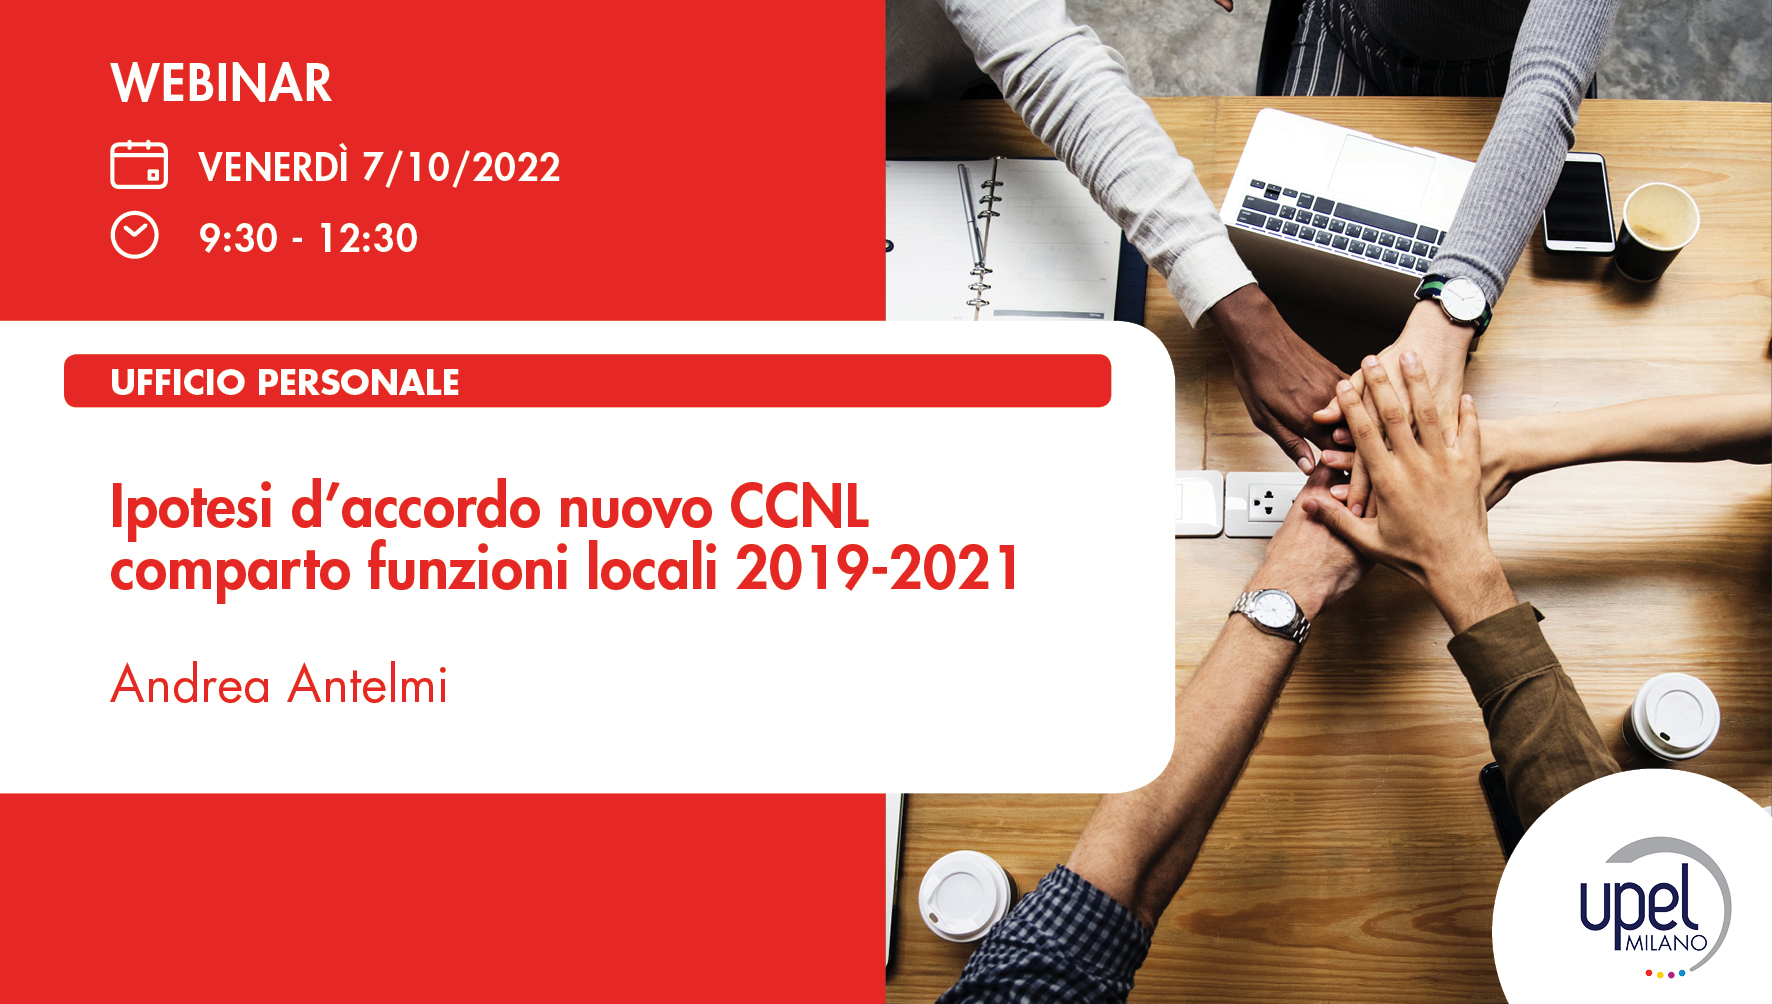 Ipotesi d'accordo nuovo CCNL comparto funzioni locali 2019 - 2021